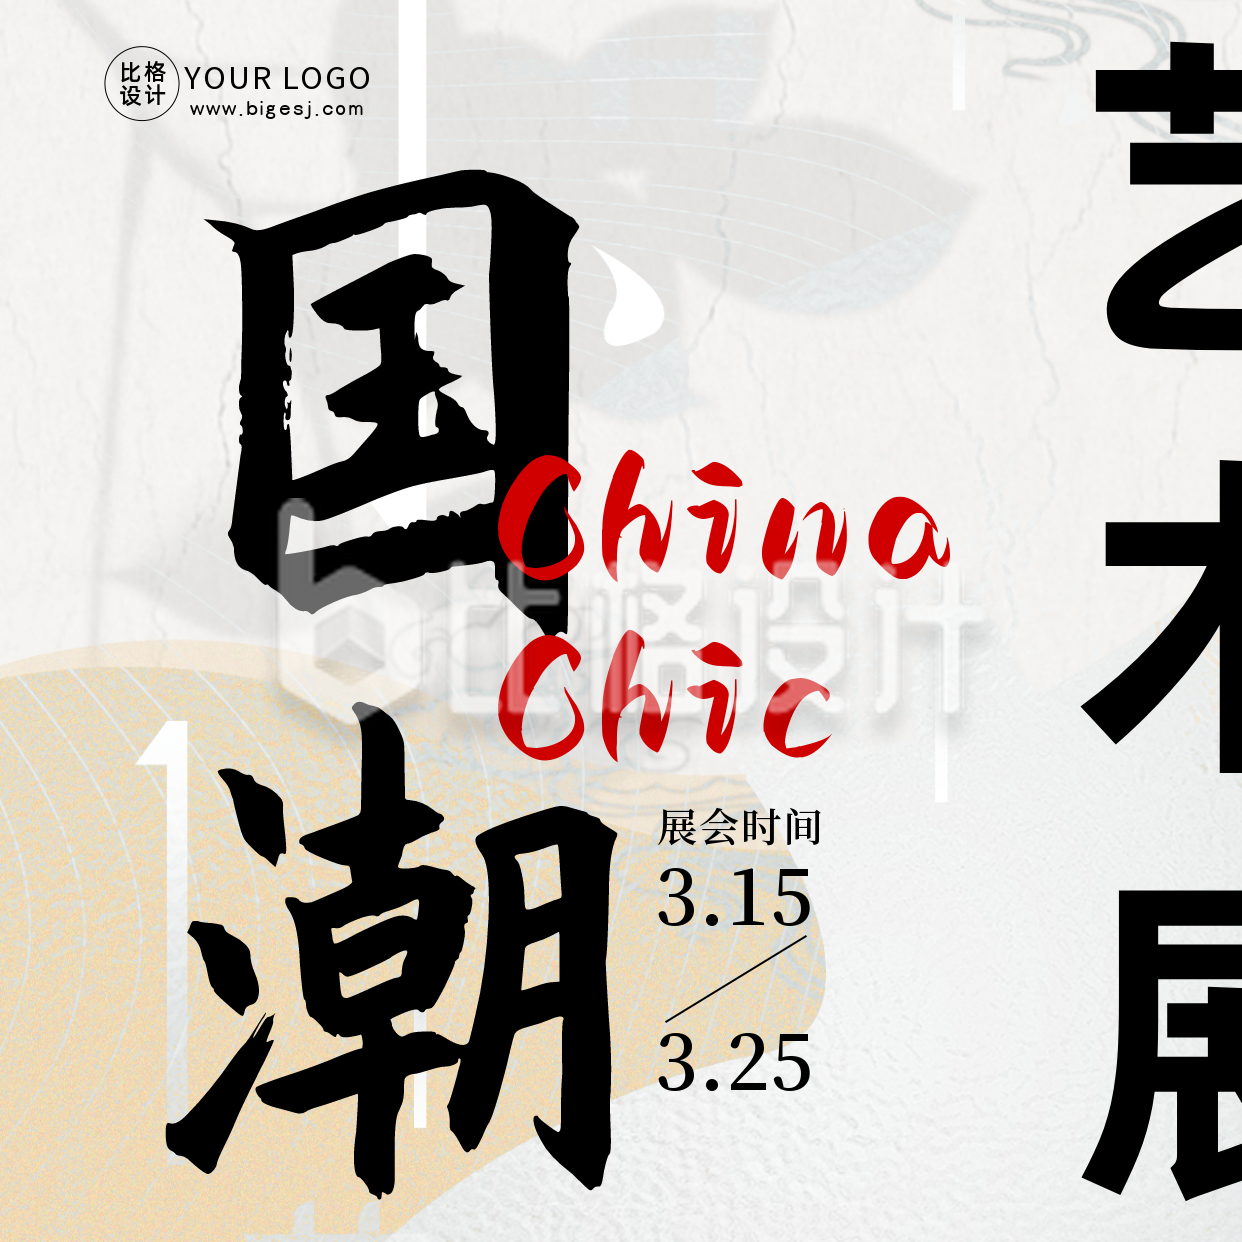 国潮中国风艺术展巡展市集活动宣传方形海报